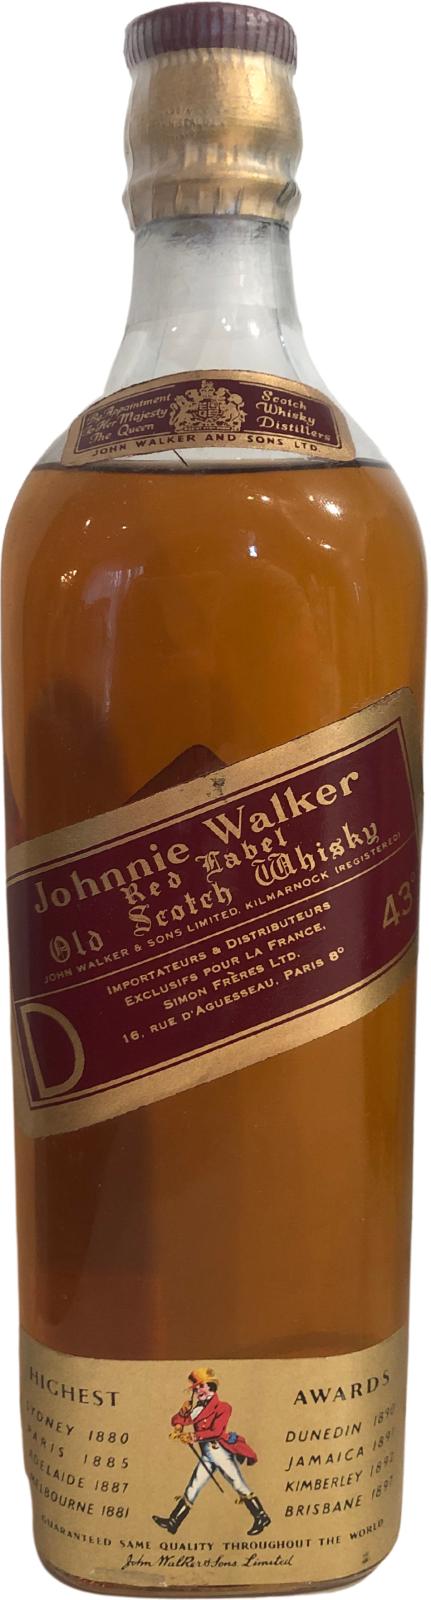 Johnnie Walker Red Label Simon Freres Ldt Paris 43% 700ml